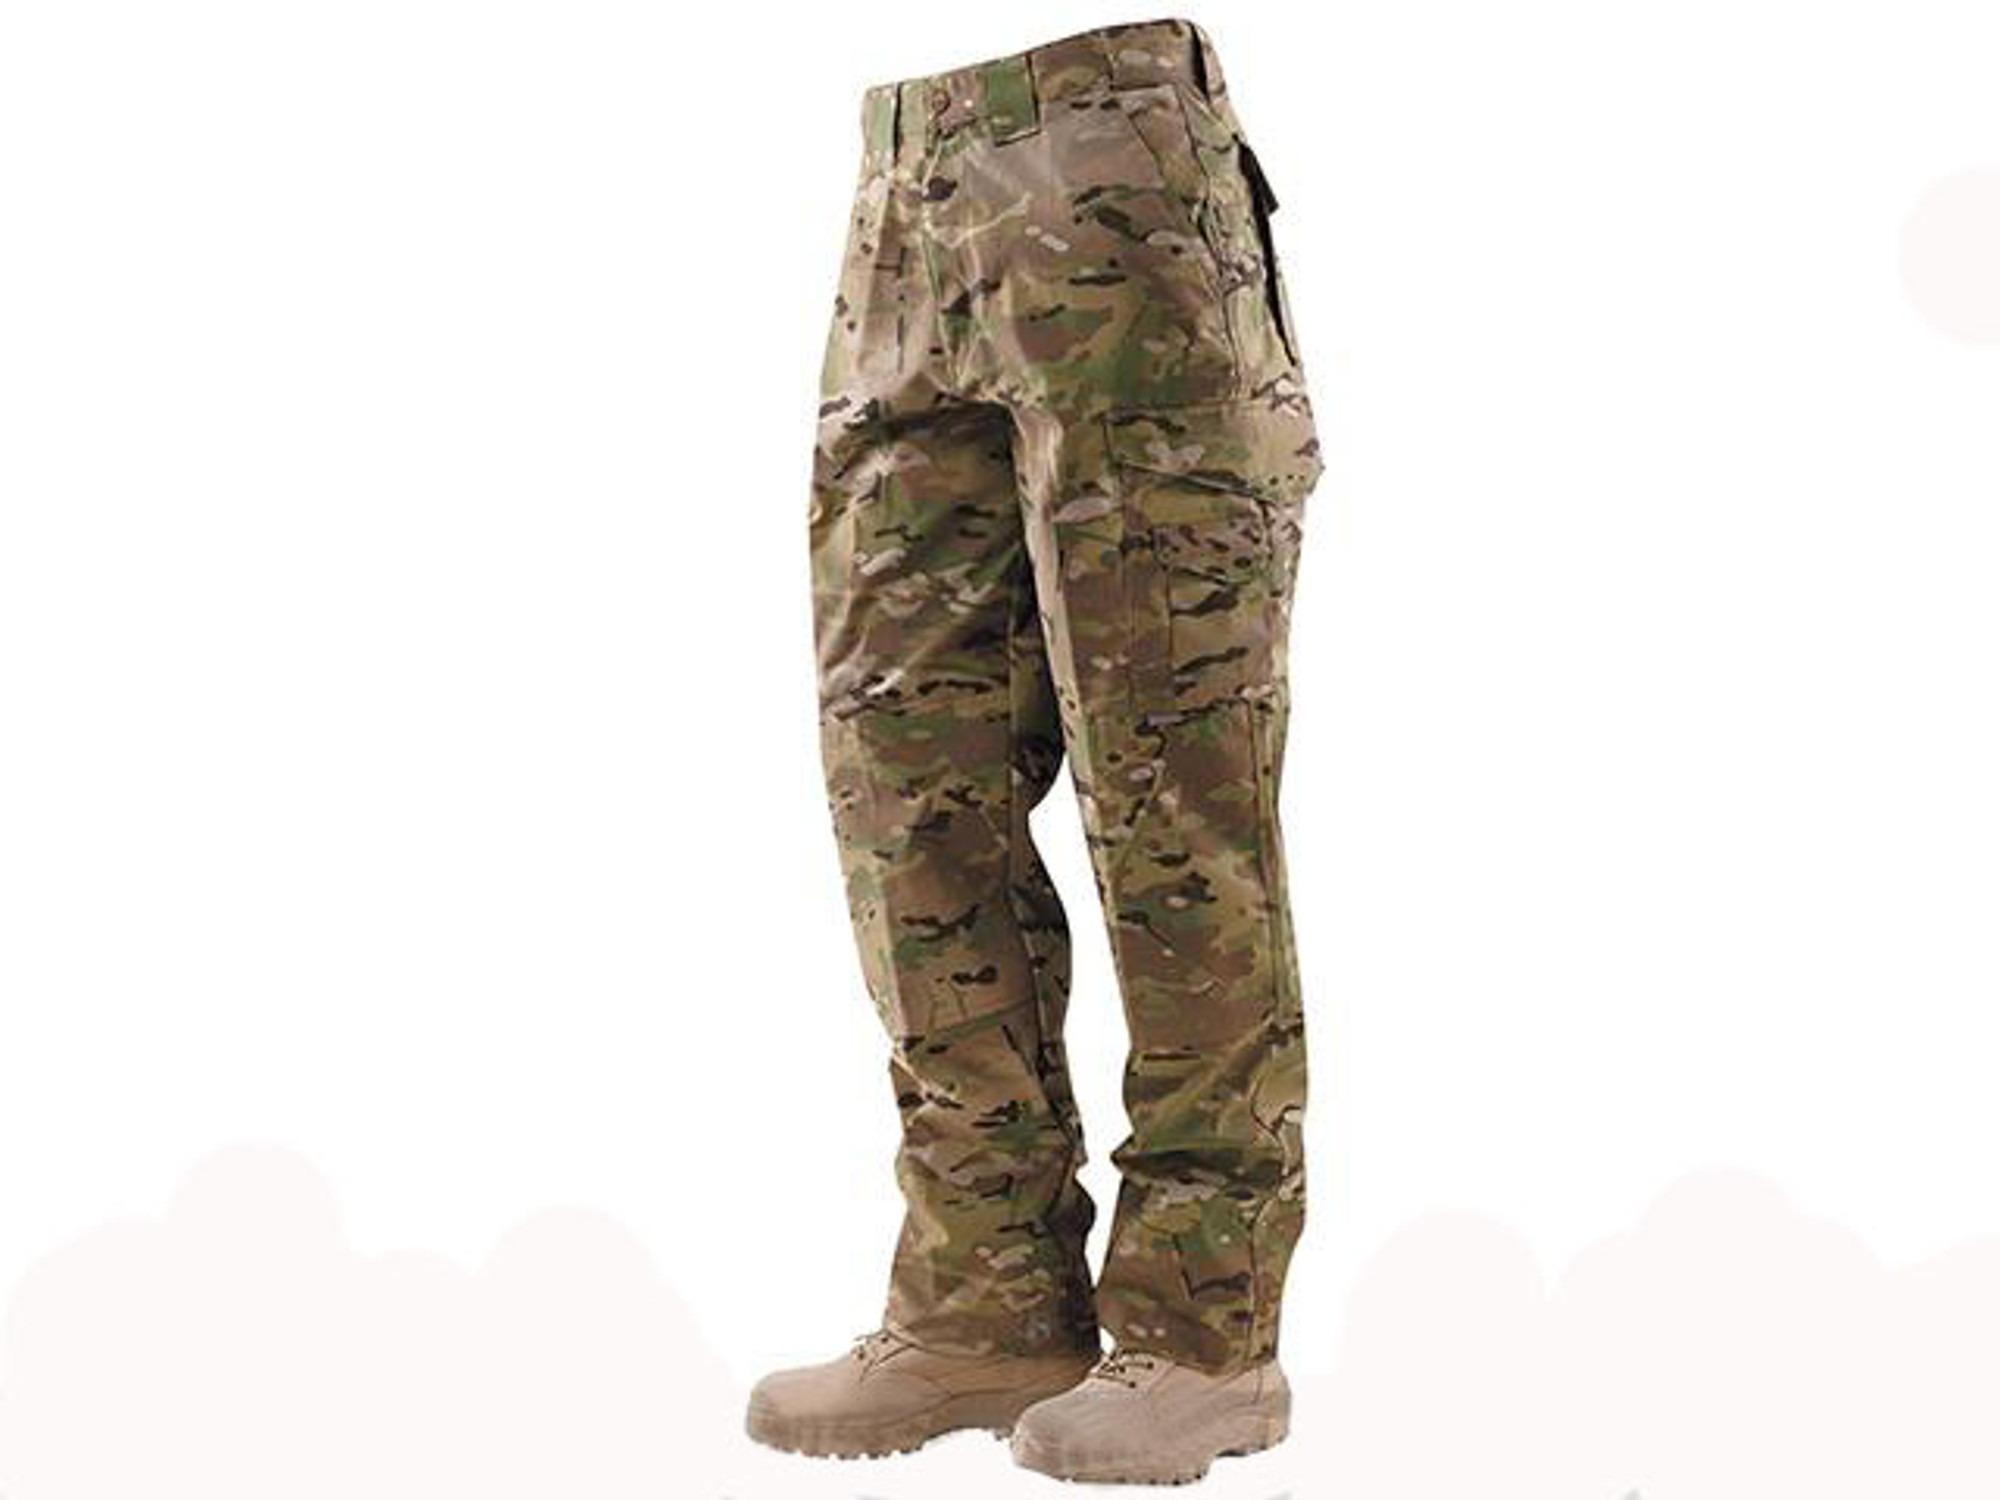 Tru-Spec 24-7 Tactical Response Uniform Pants - Multicam (Size: 30x32)